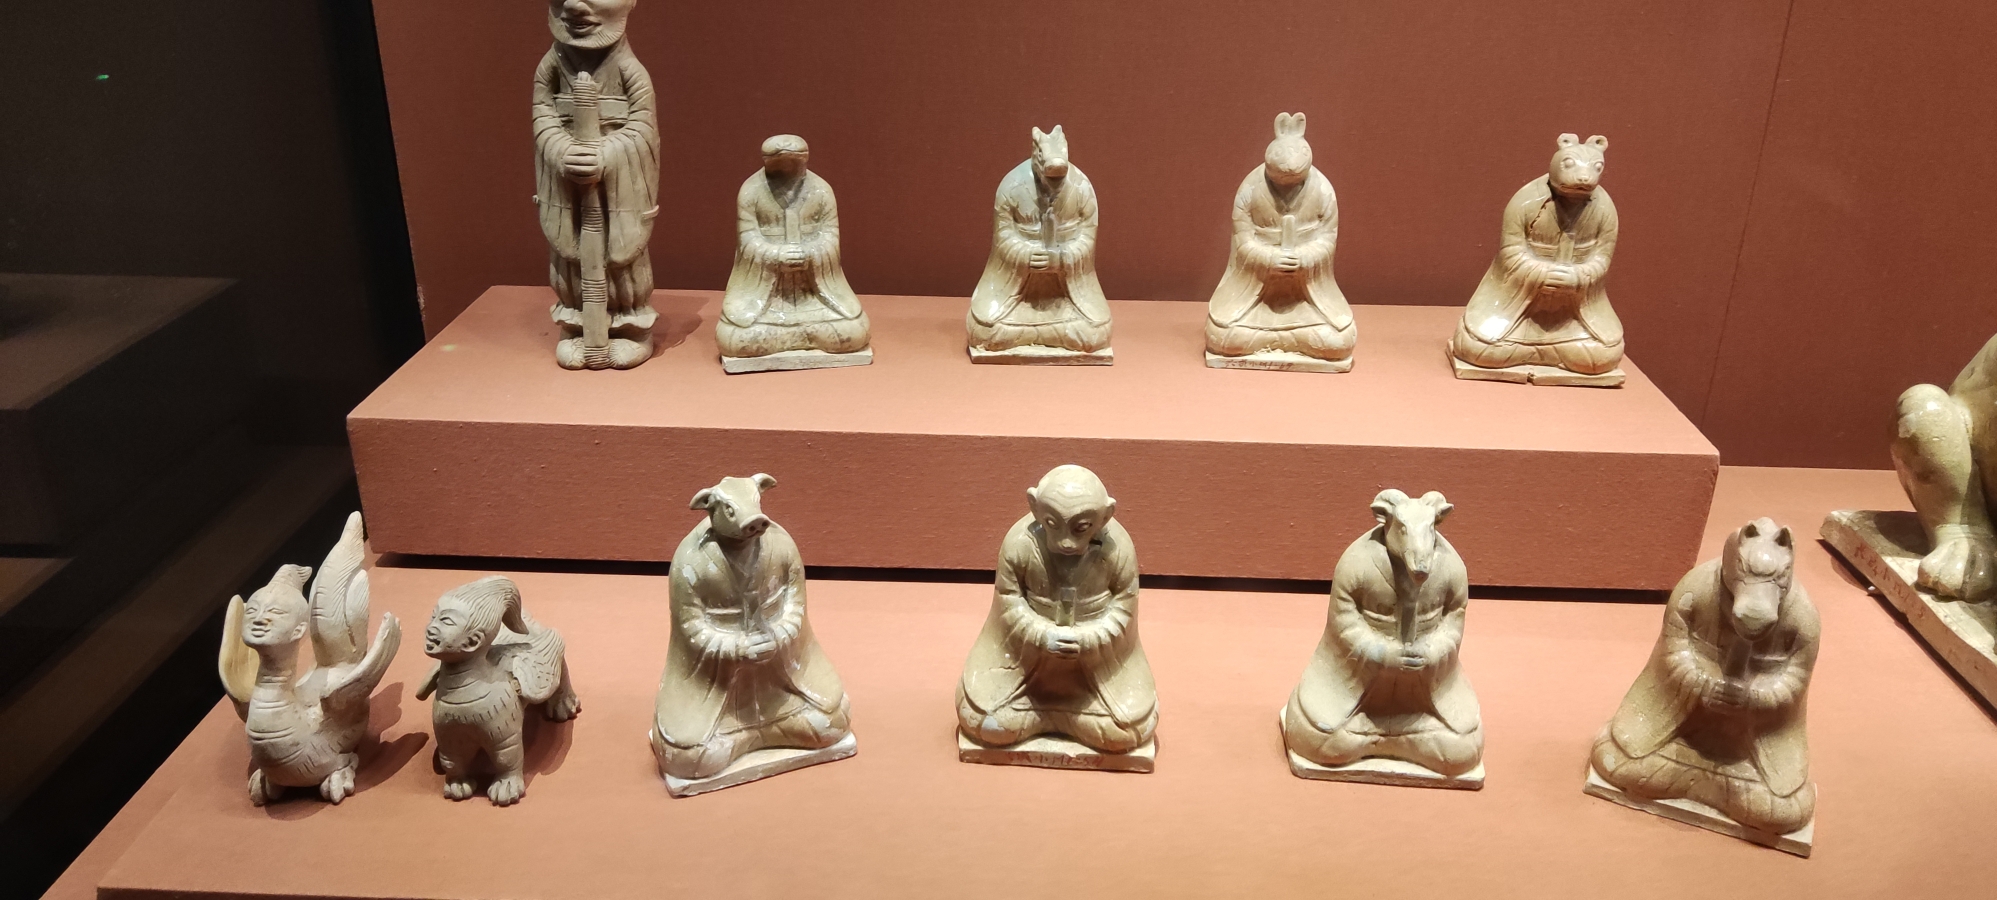 湖南省博物馆:穿越千年,文物会说话